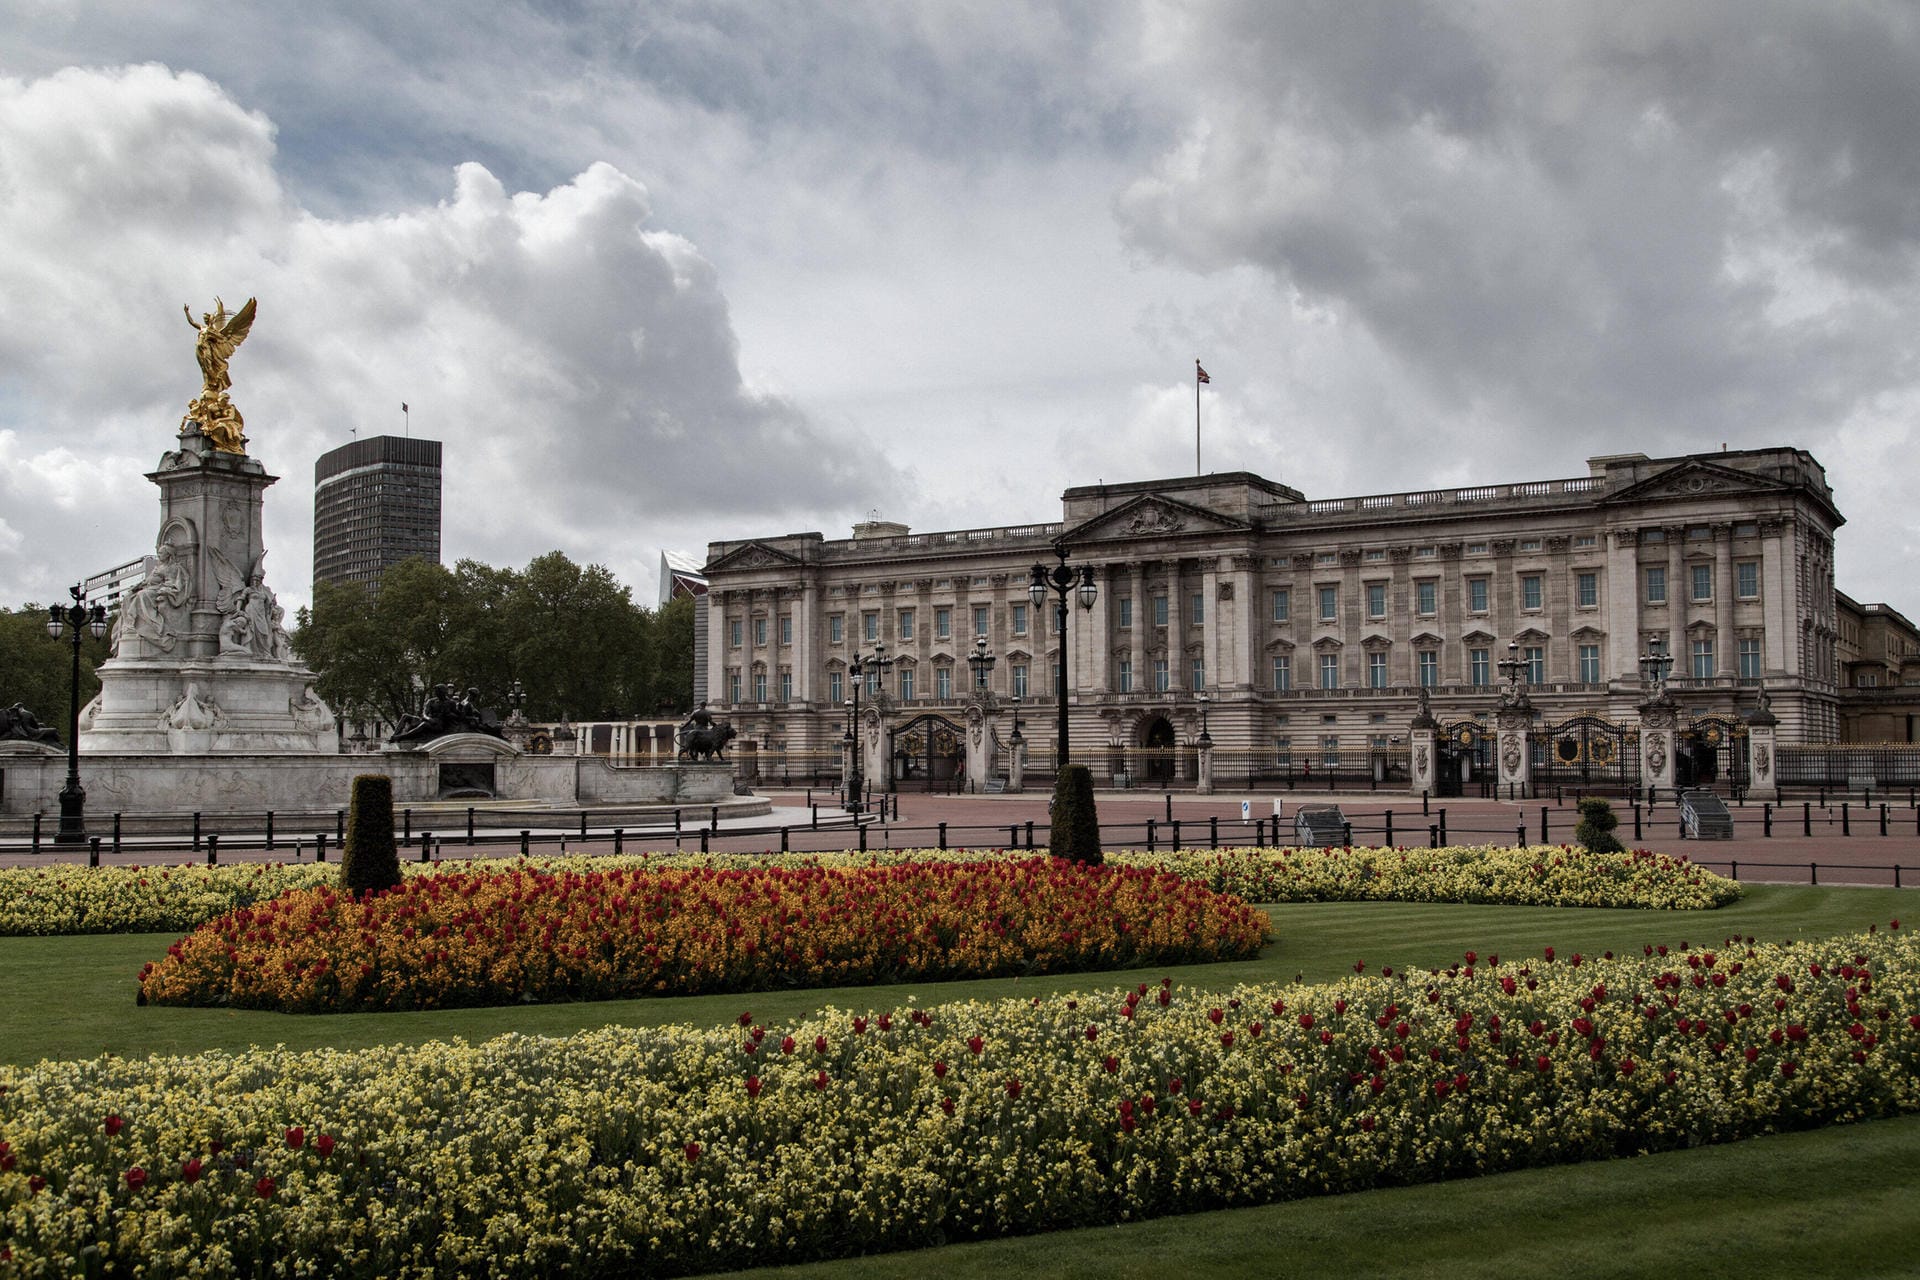 Der Buckingham-Palast befindet sich in London und ist der Hauptwohnsitz der Queen. Sie empfängt hier Staatsoberhäupter und seit 1993 gestattet die Königsfamilie Touristen, den prunkvollen Palast zu besichtigen. (Besitz der Krone)